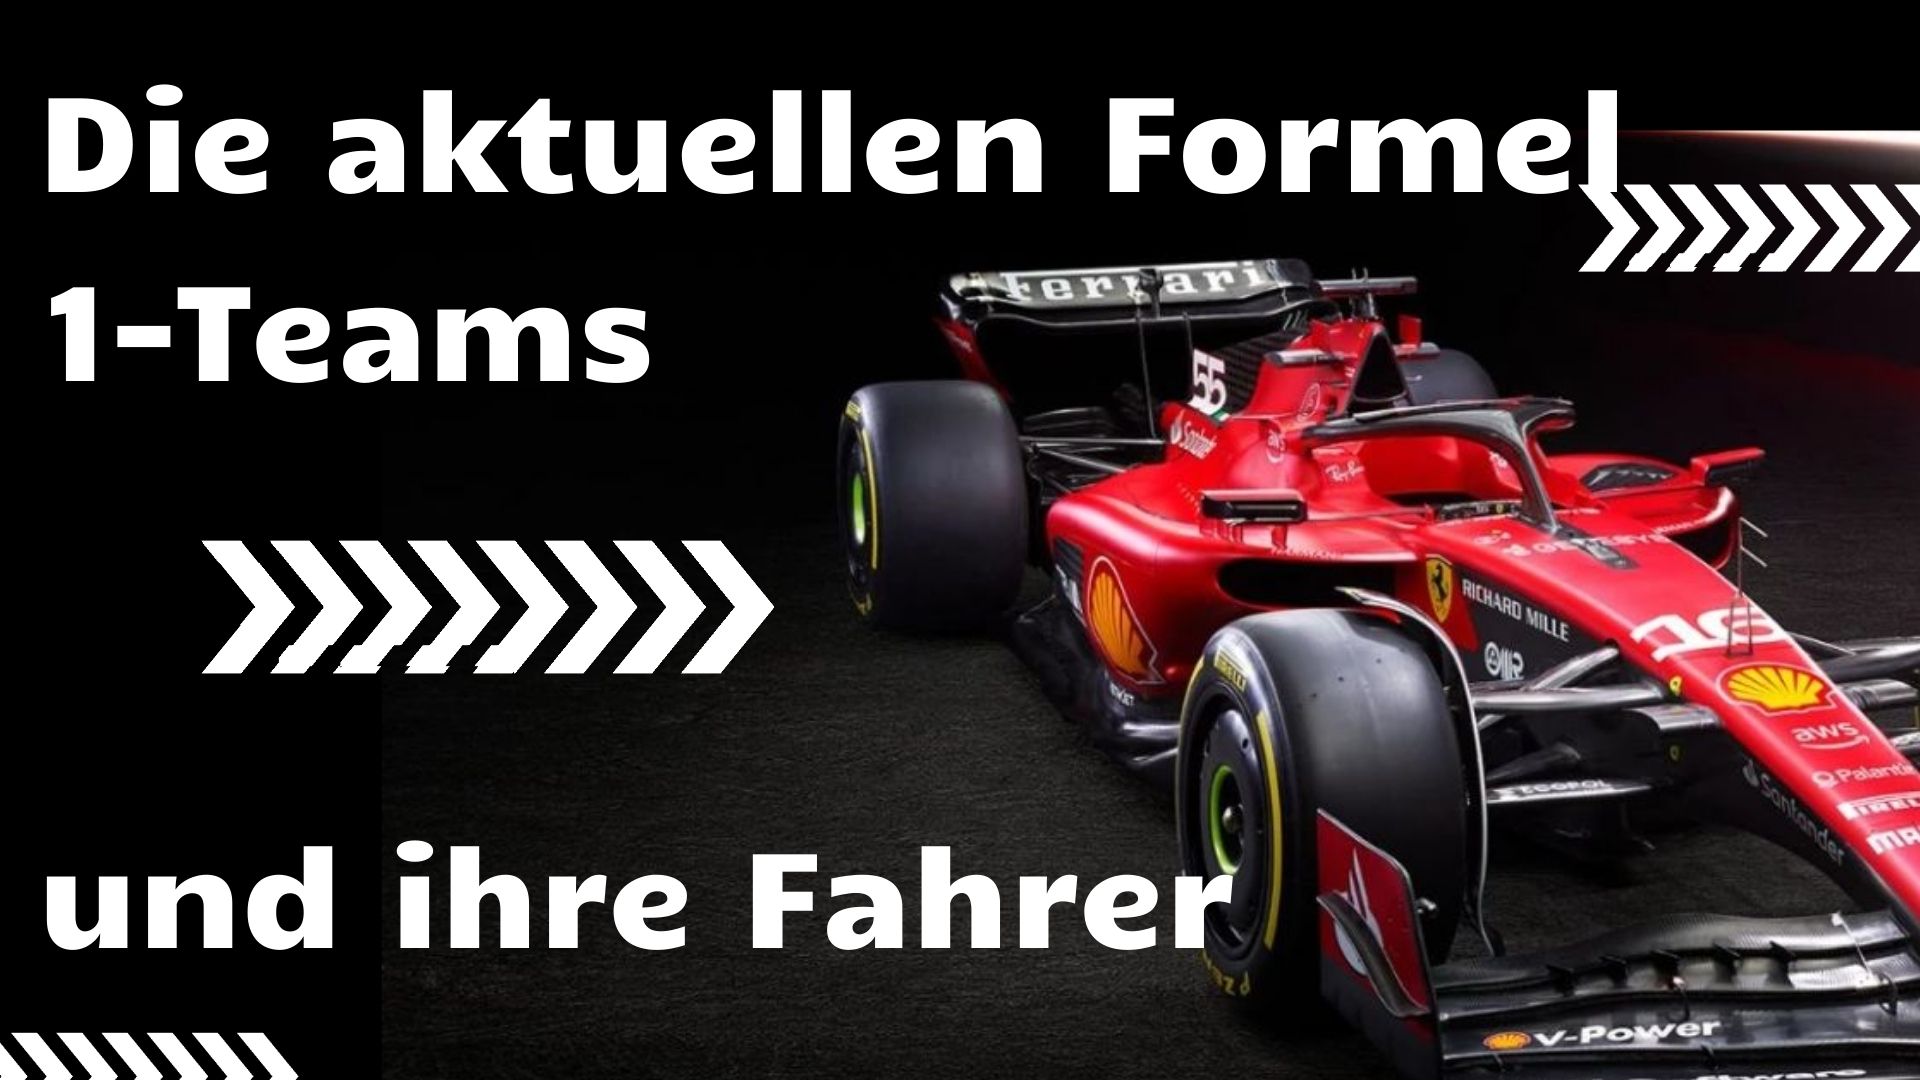 Die aktuellen Formel-1-Teams und ihre Fahrer